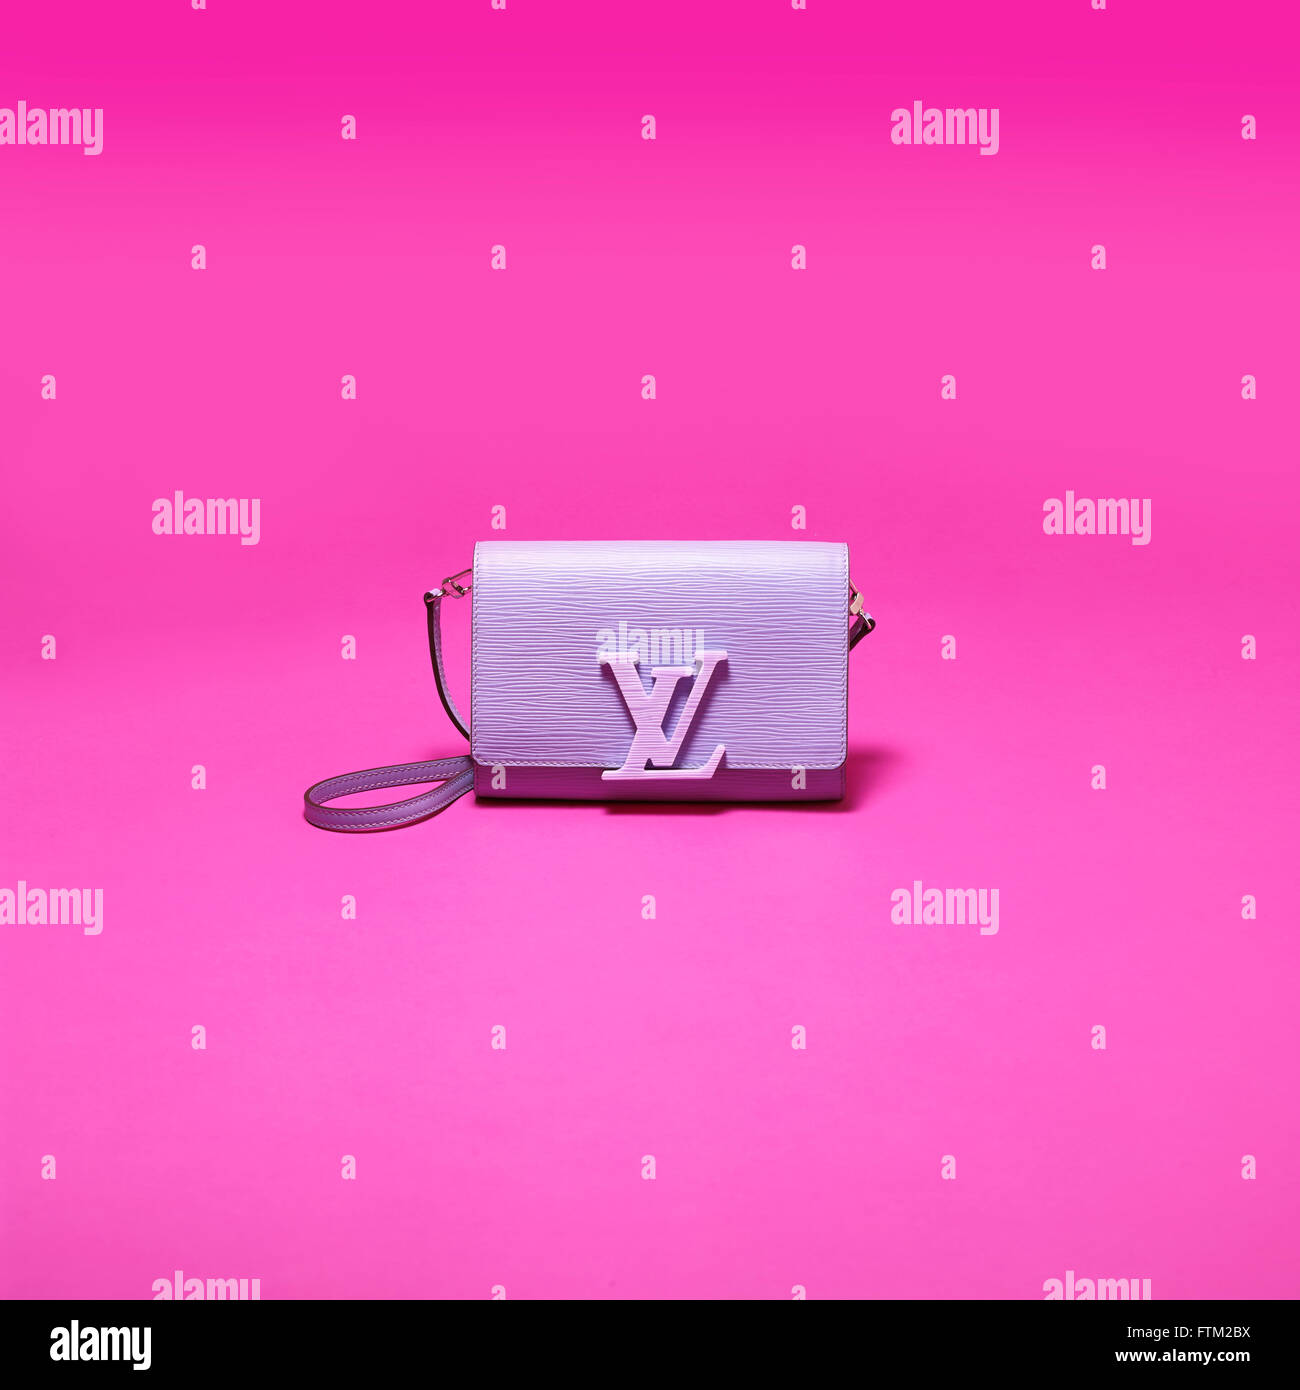 Louis Vuitton Handtasche auf rosa Hintergrund Stockfotografie - Alamy